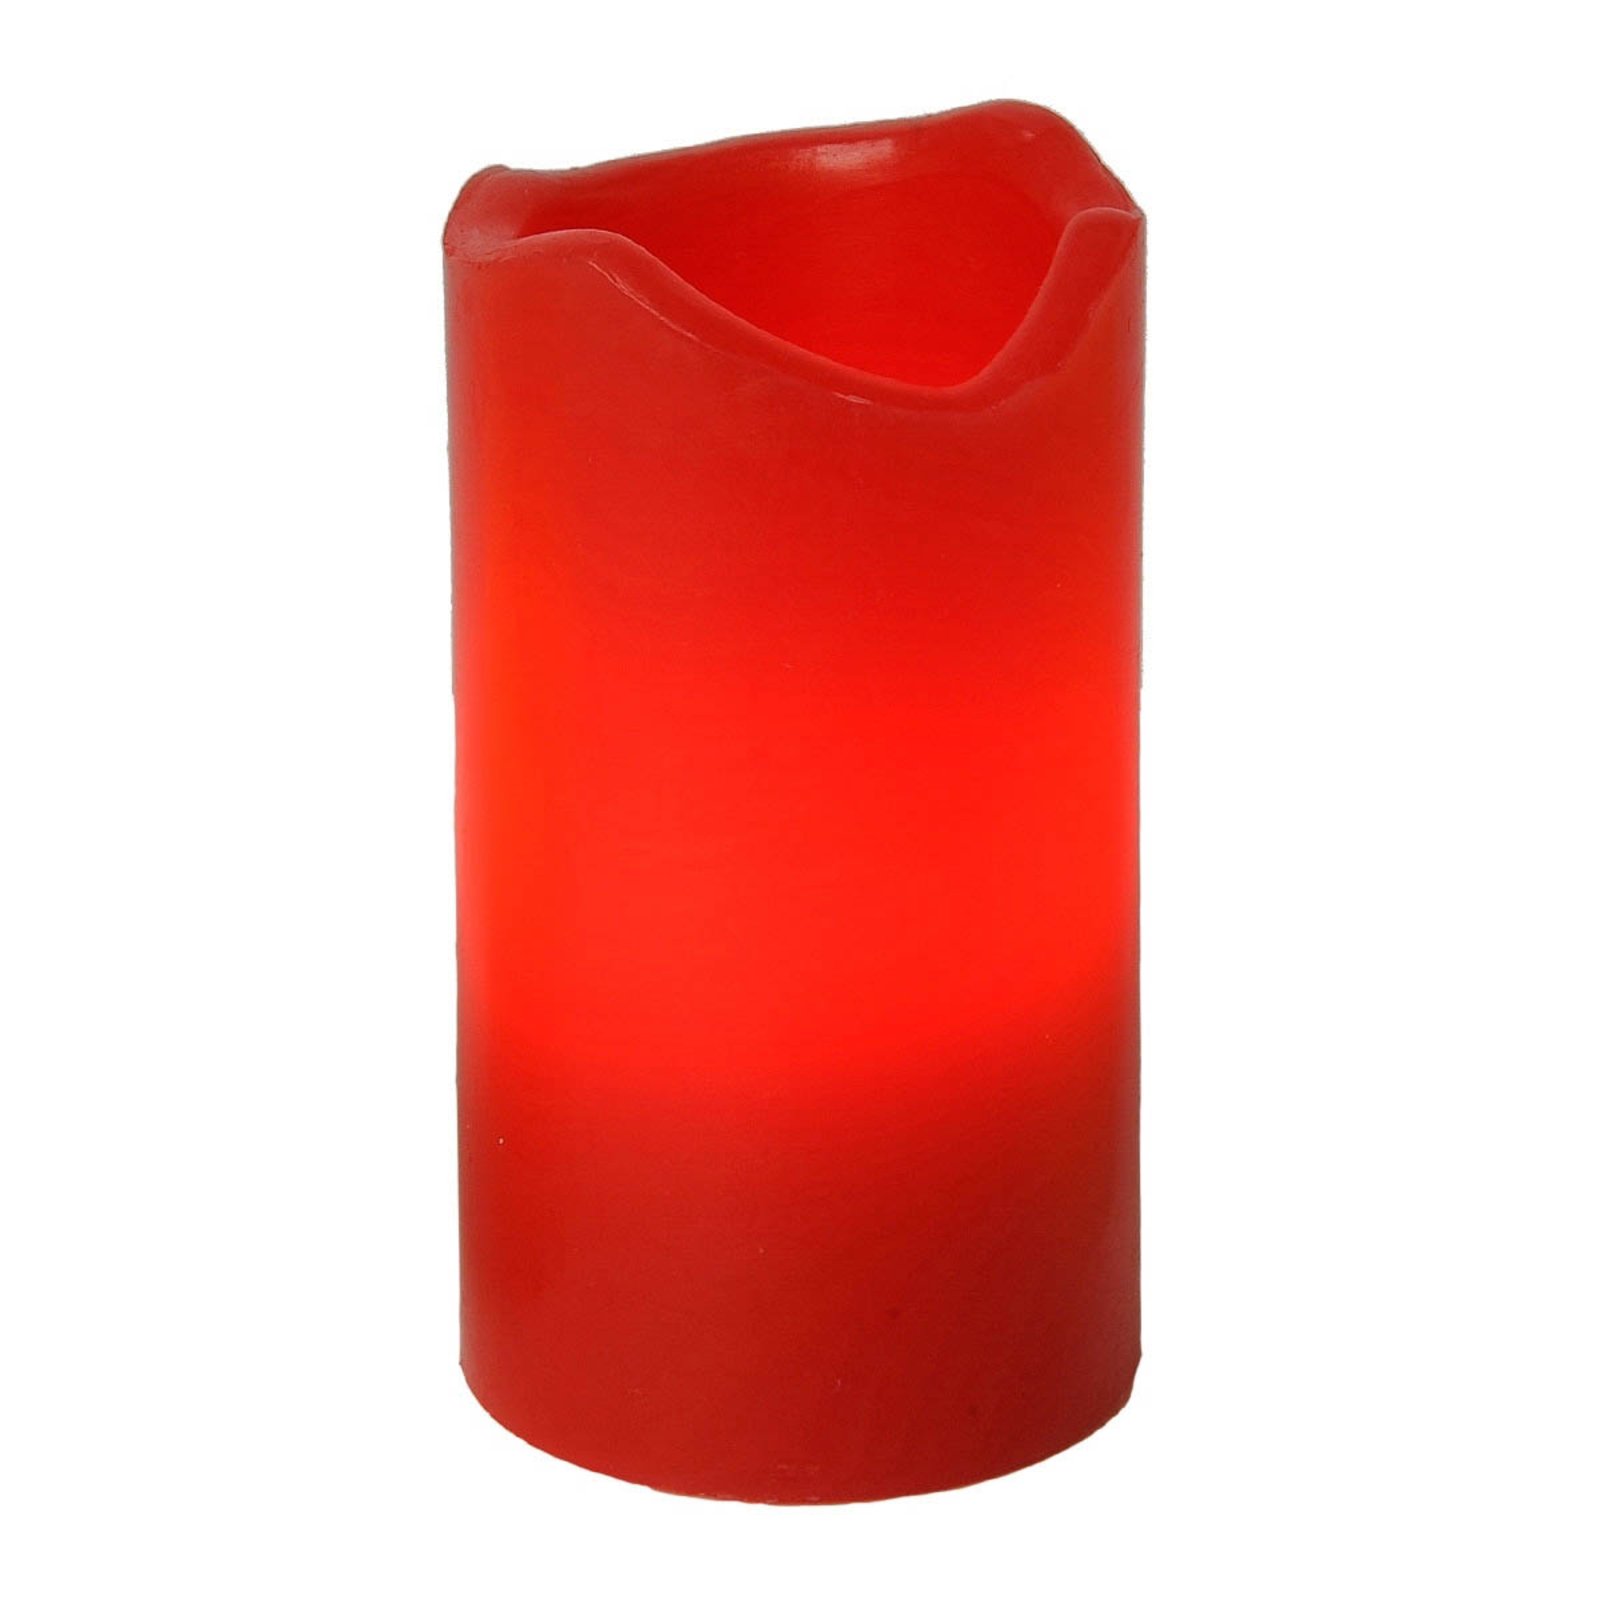 4-er Set - Candle LED-Kerzen m. Fernbedienung rot